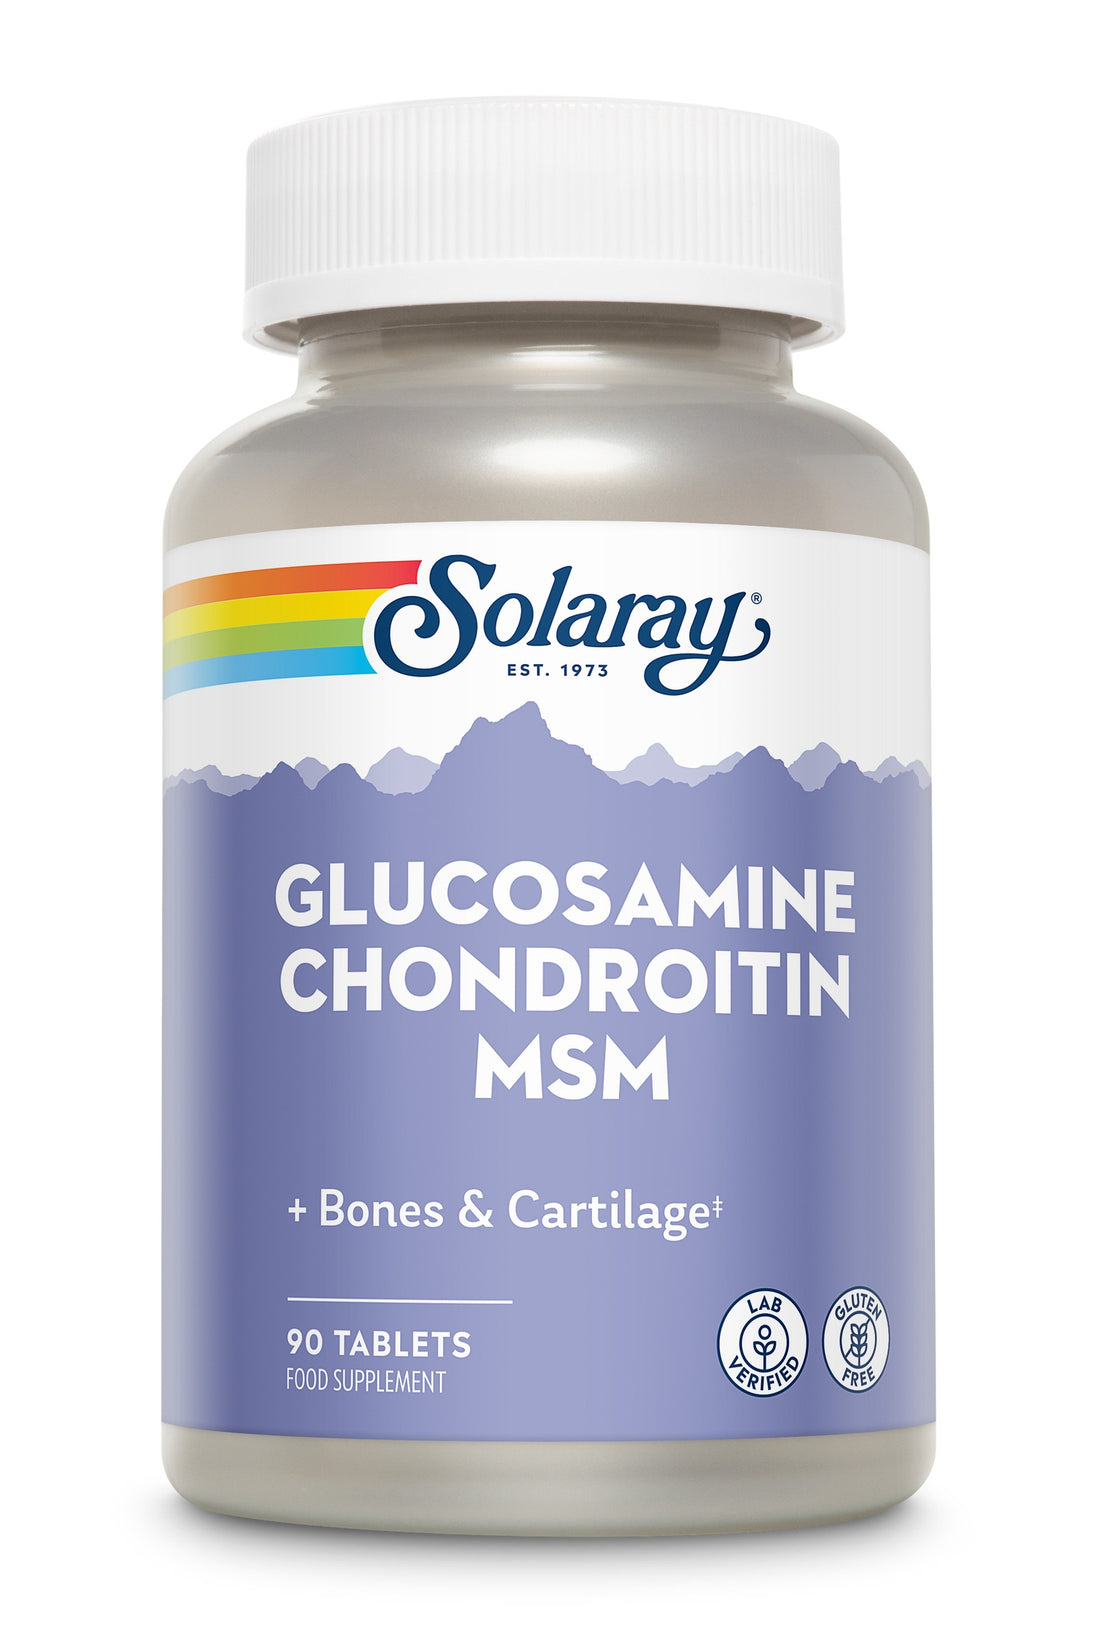 Tableta Solaray Glucosamine Chondroitin & MSM 90